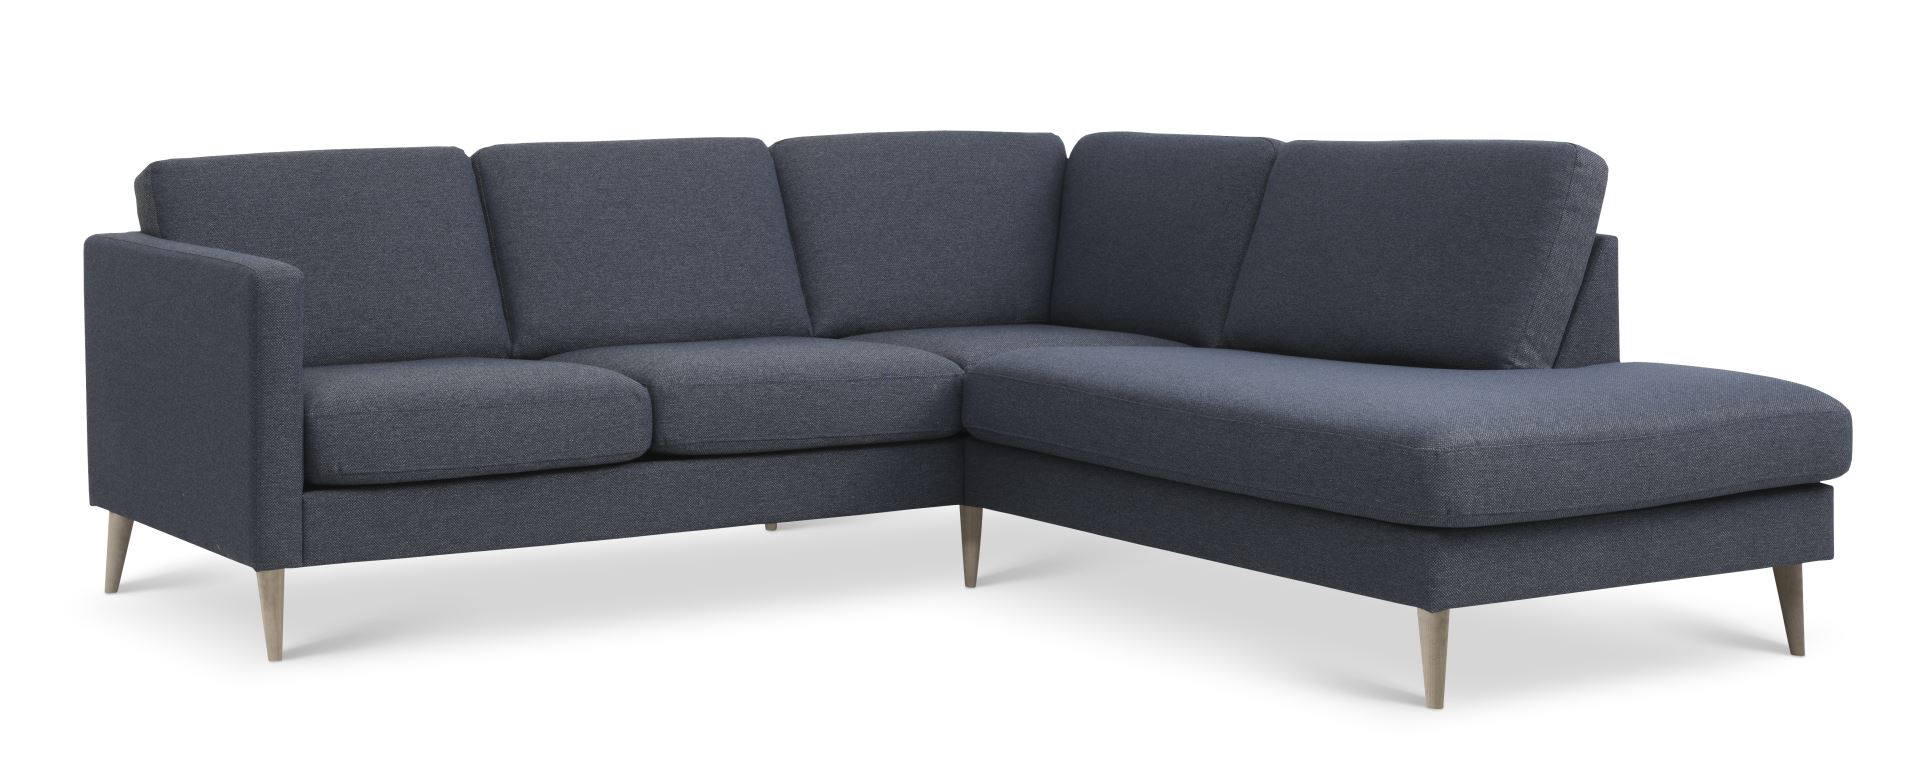 Ask sæt 53 lille OE sofa, m. højre chaiselong - navy blå polyester stof og natur træ